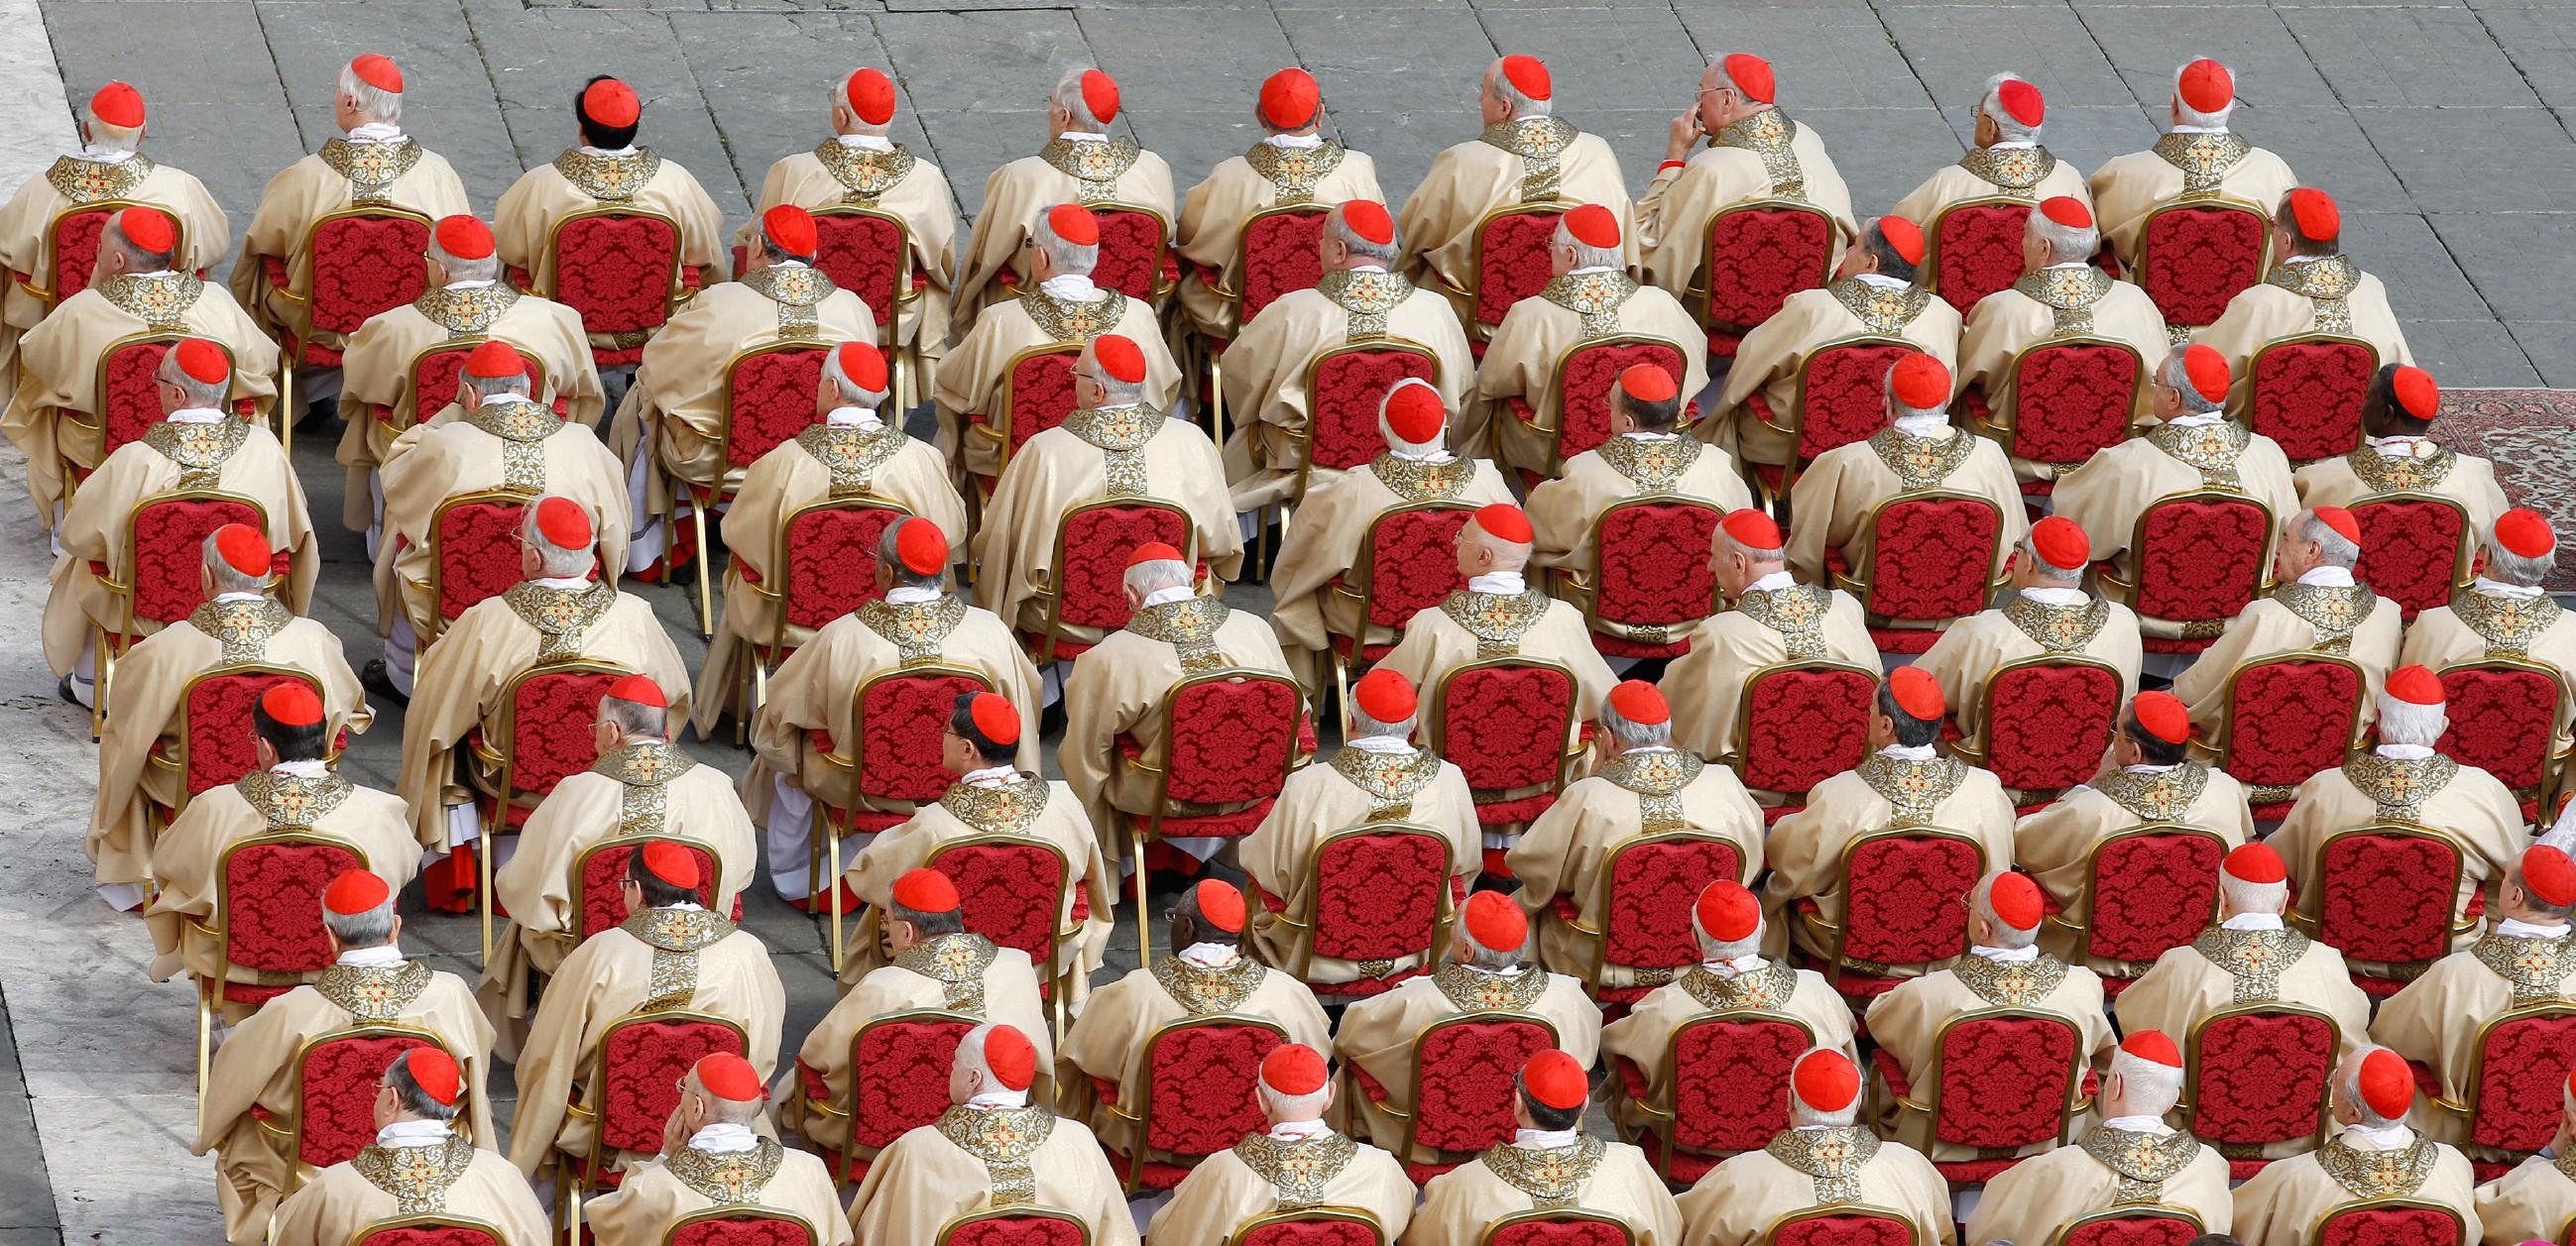 Der Papst - Kirche, Macht und Machtmissbrauch